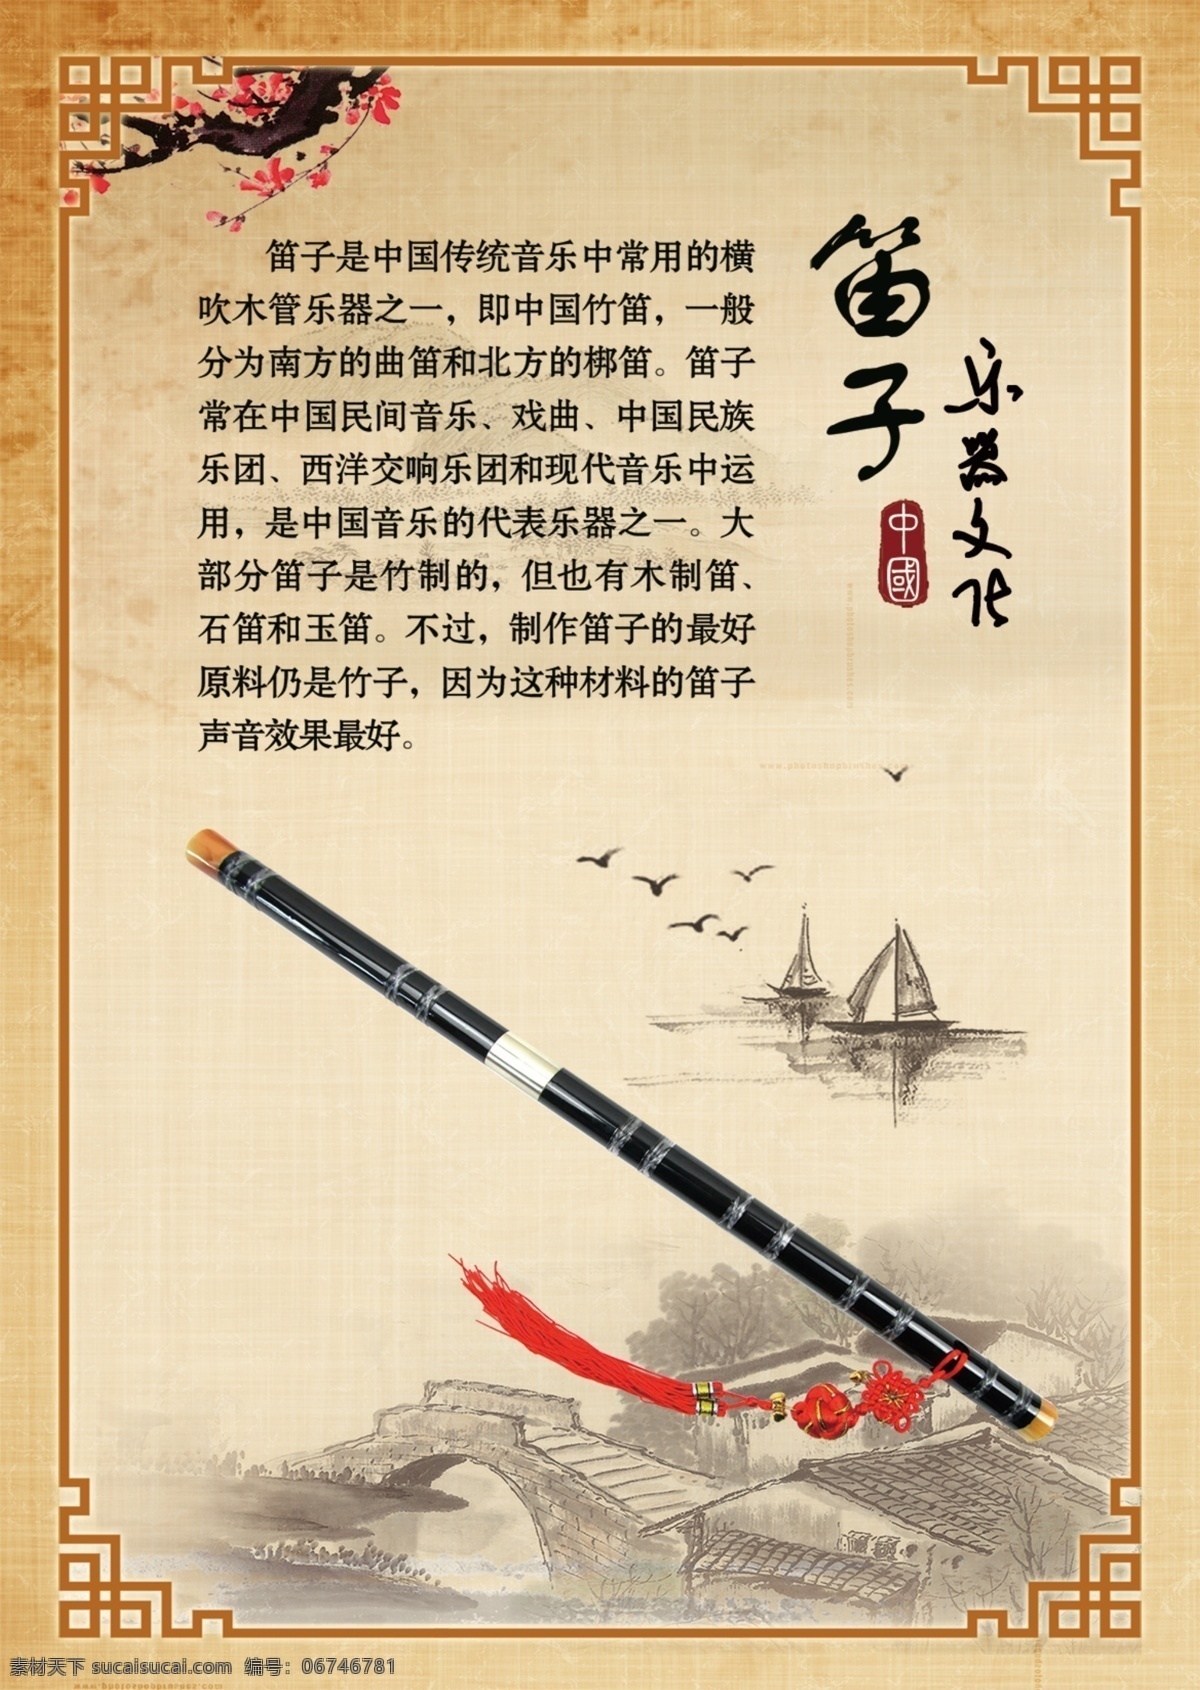 中华民族乐器 琵琶 笛子 鼓 古筝 二胡 扬琴 文化艺术 传统文化